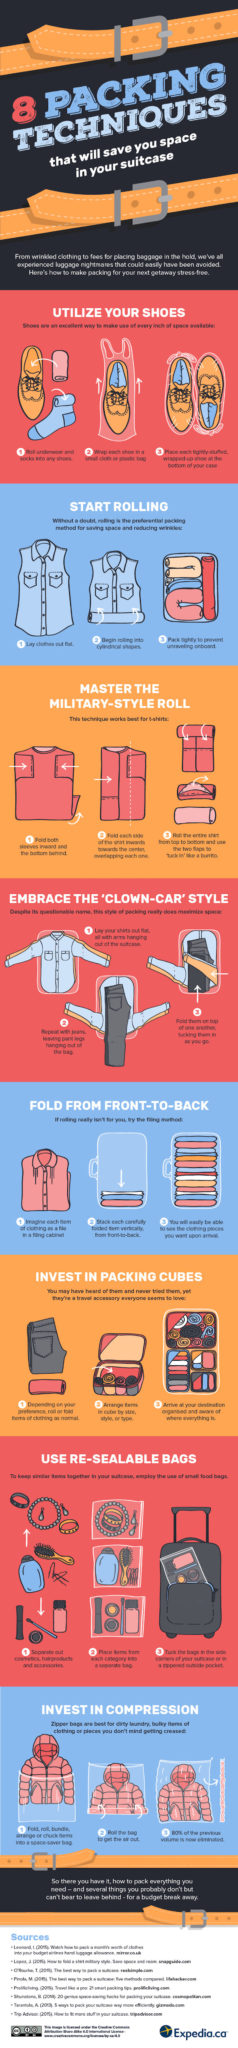 8 Tipps zum Kofferpacken. (c) Expedia